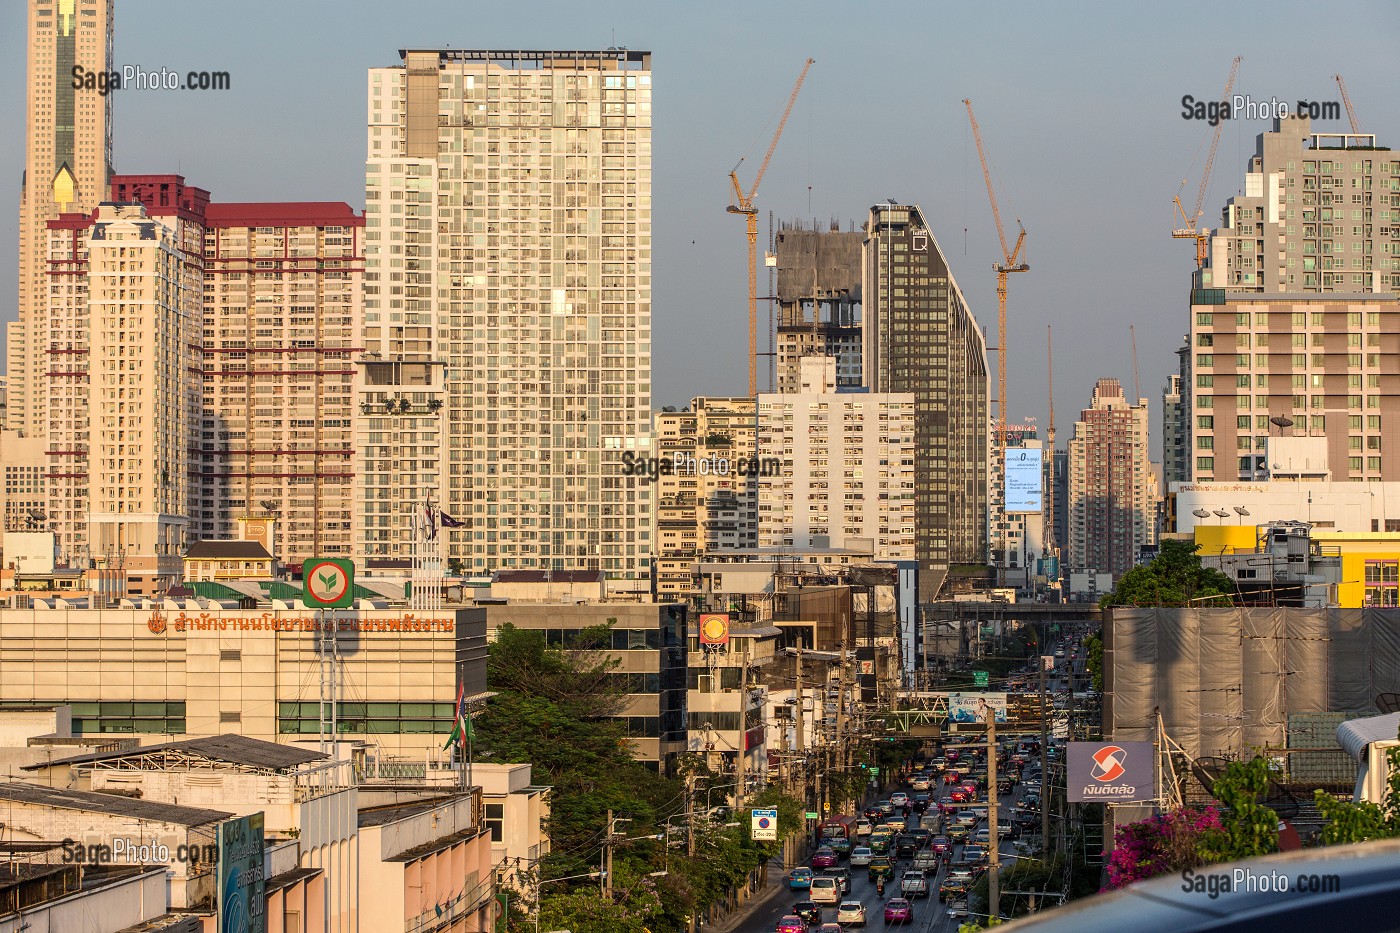 VUE PANORAMIQUE DES BUILDINGS ET GRATTE-CIELS DE LA VILLE DE BANGKOK, THAILANDE 